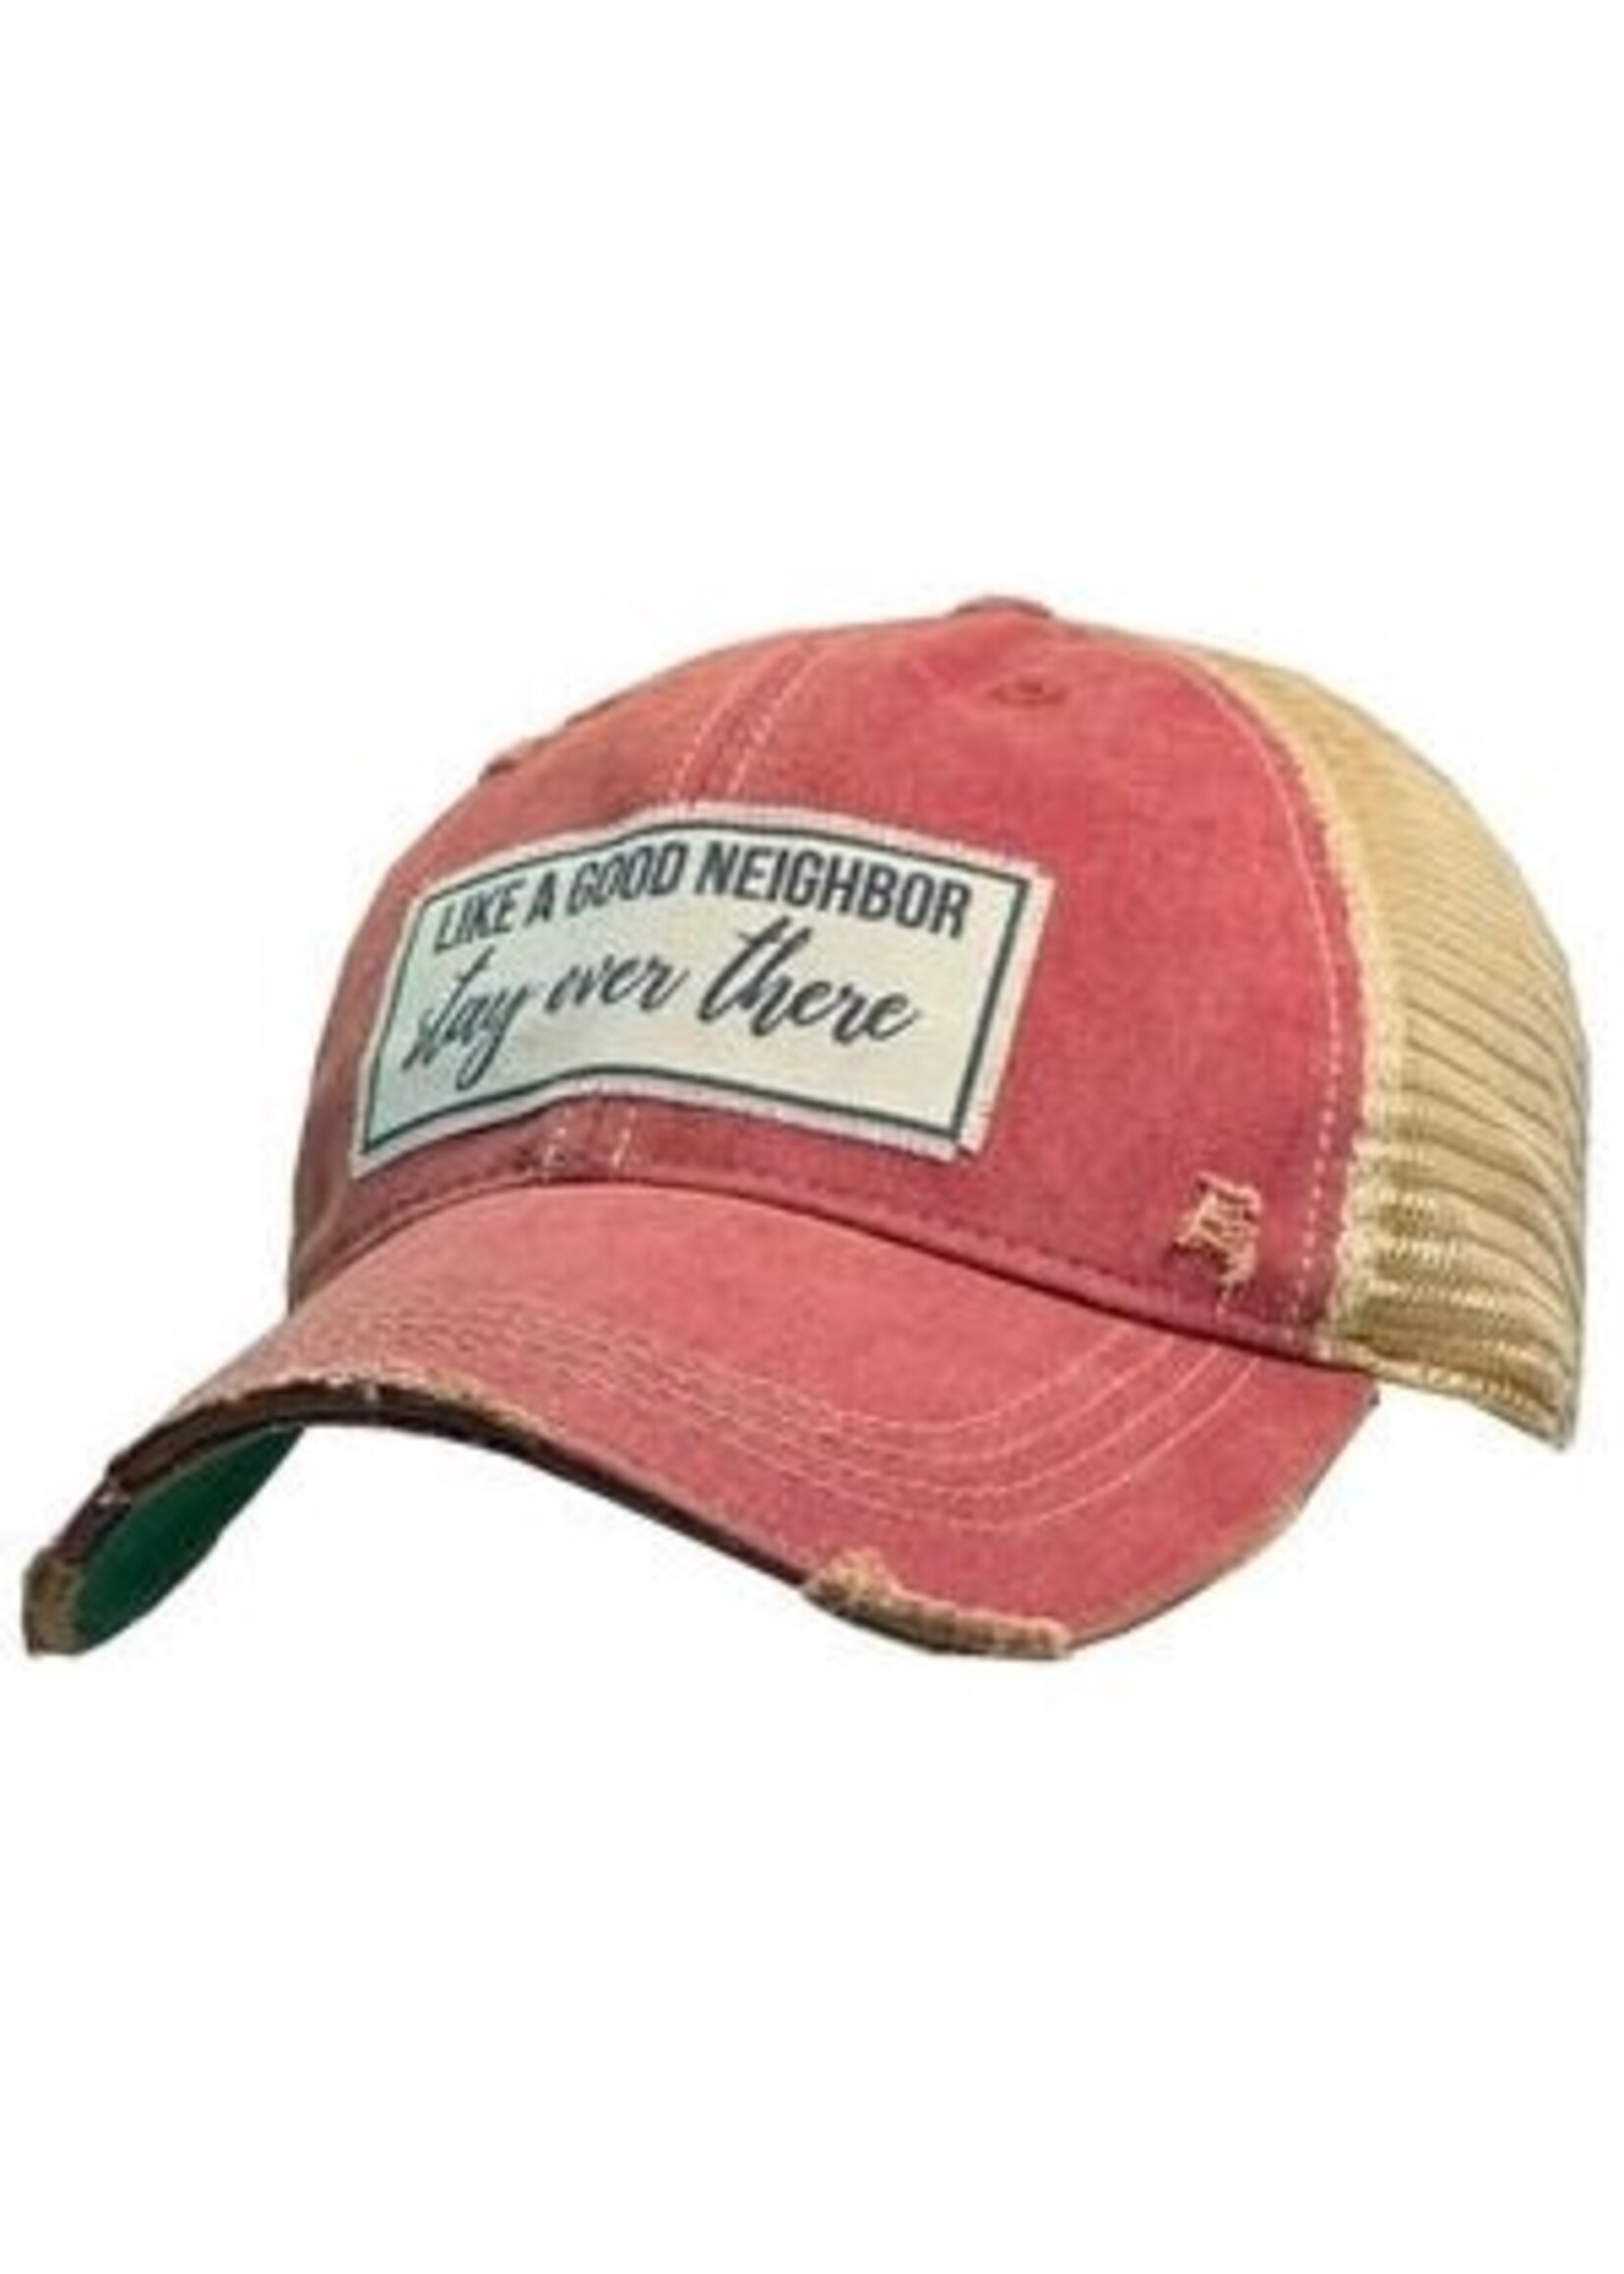 Vintage Life USA Vintage Like A Good Neighbor Trucker Hat